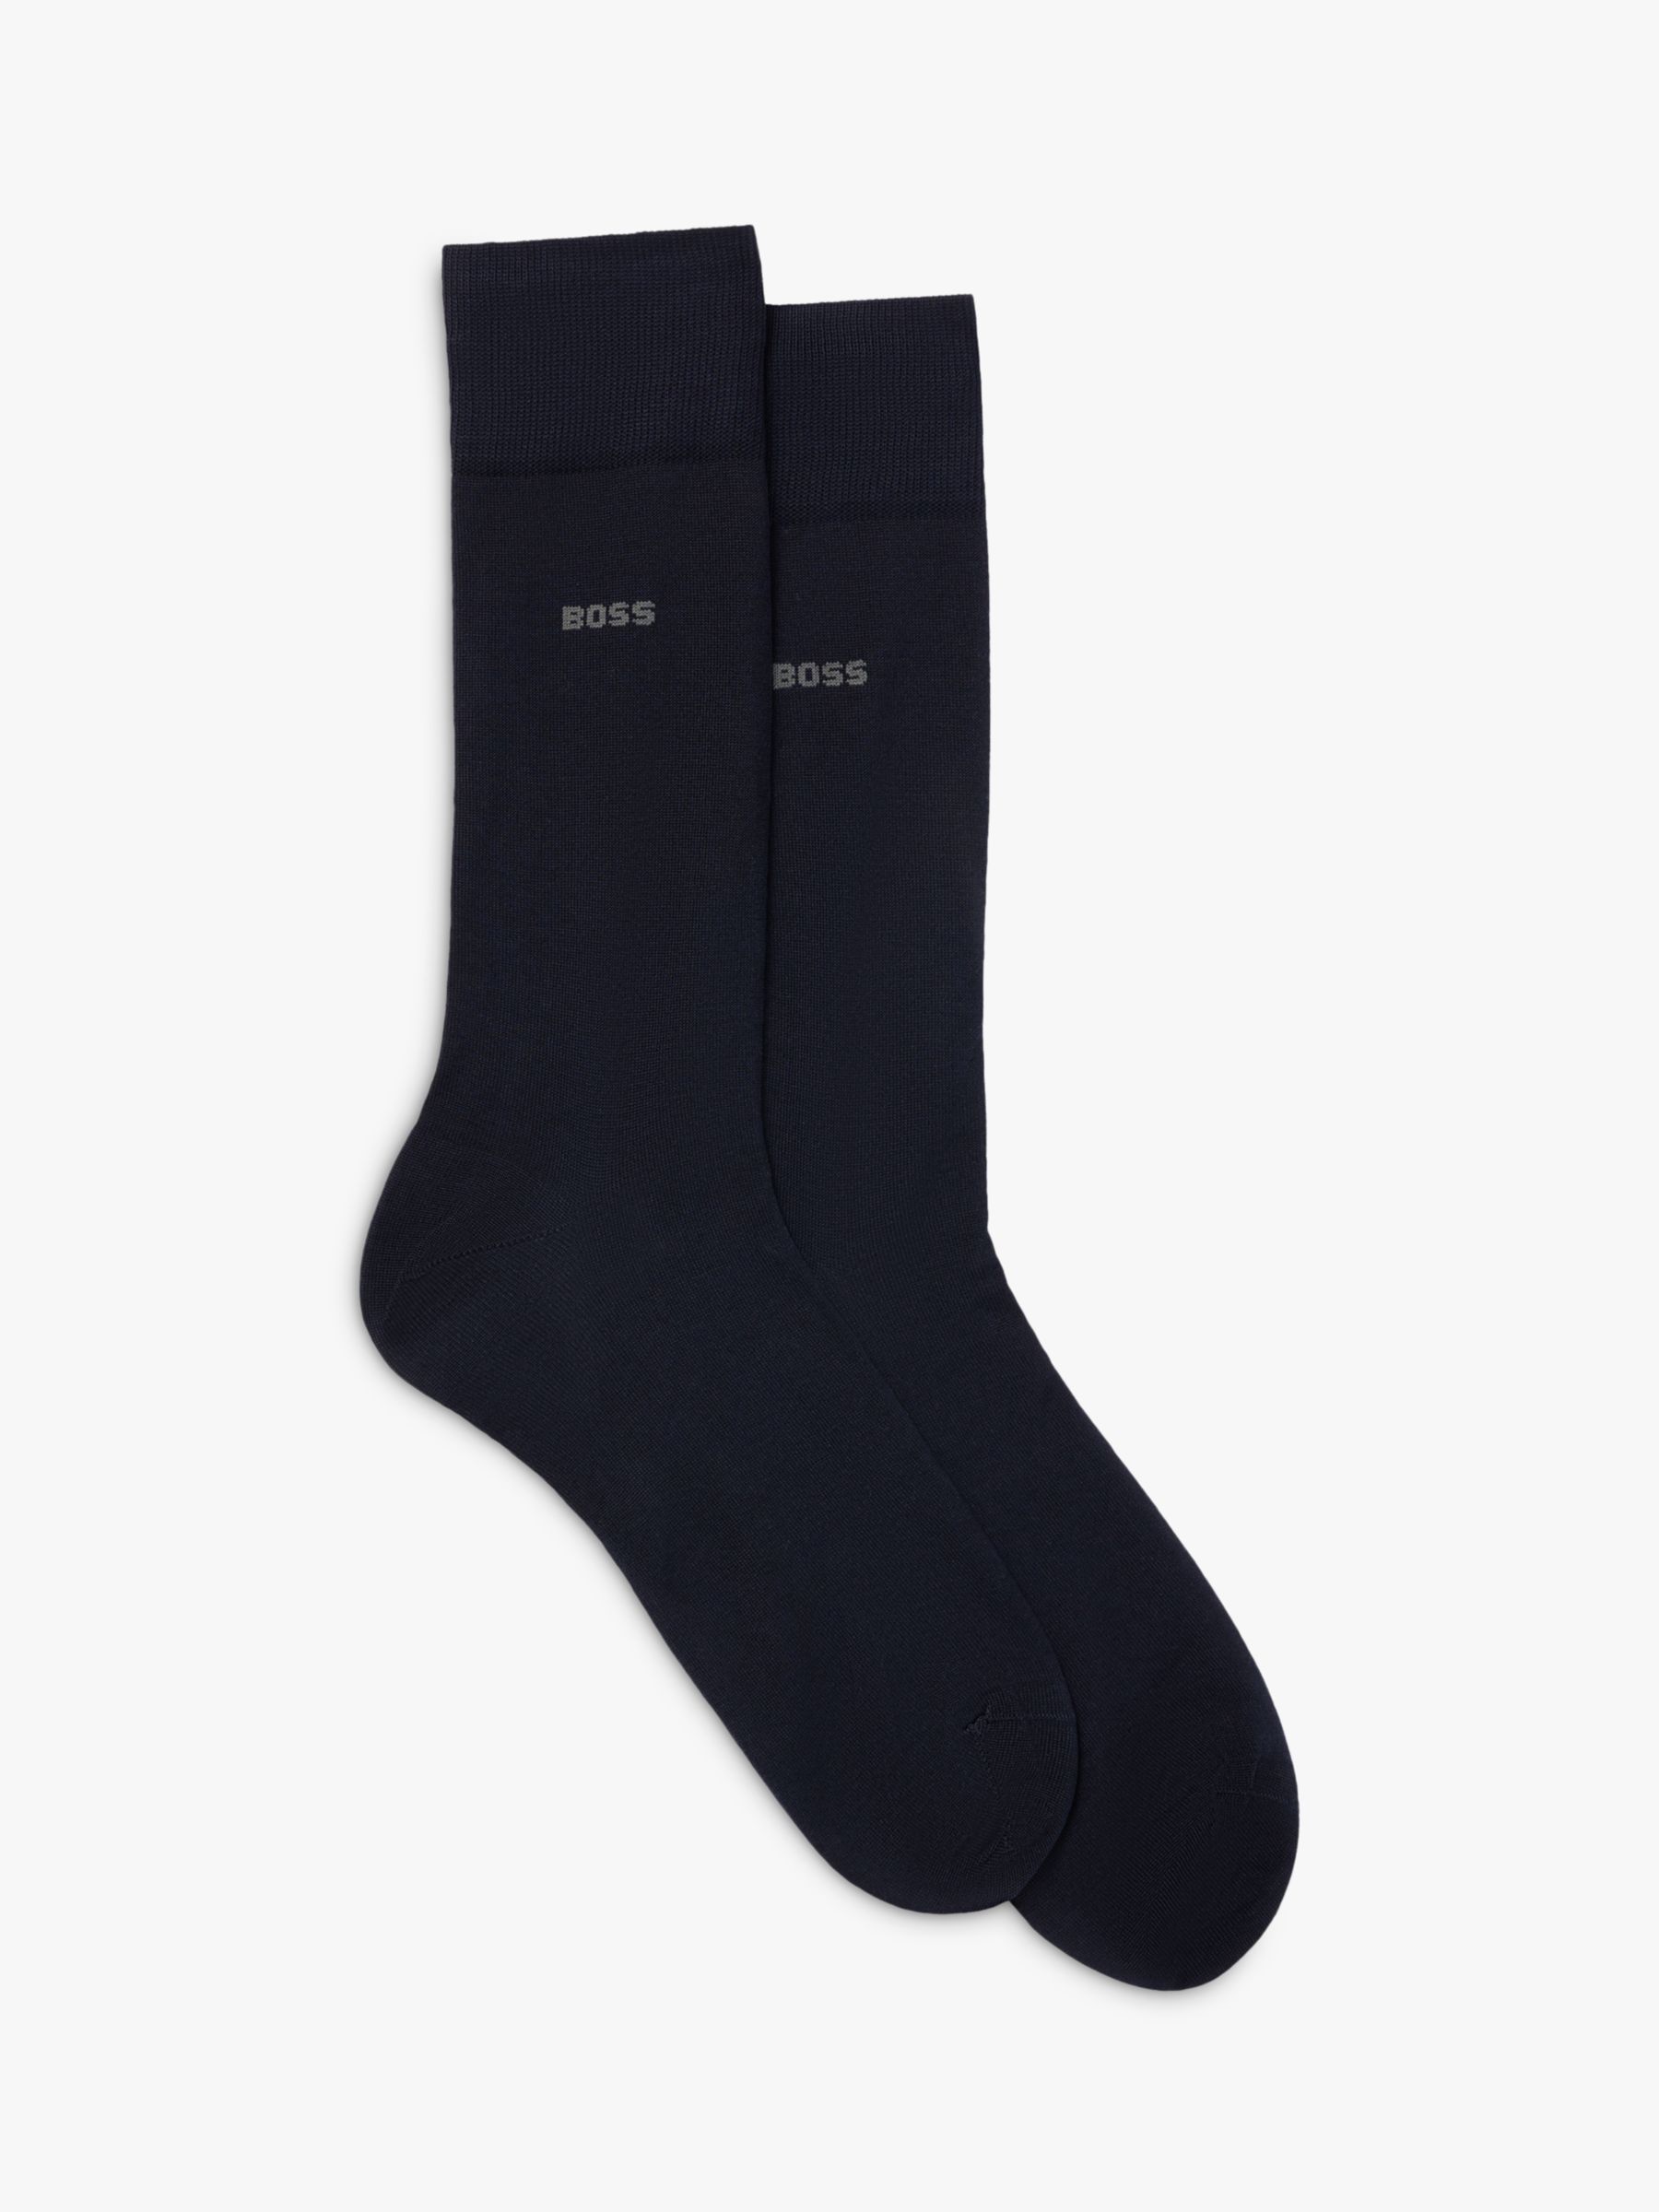 BOSS Tom Logo Socks, Pack of 2, Dark Blue at John Lewis & Partners